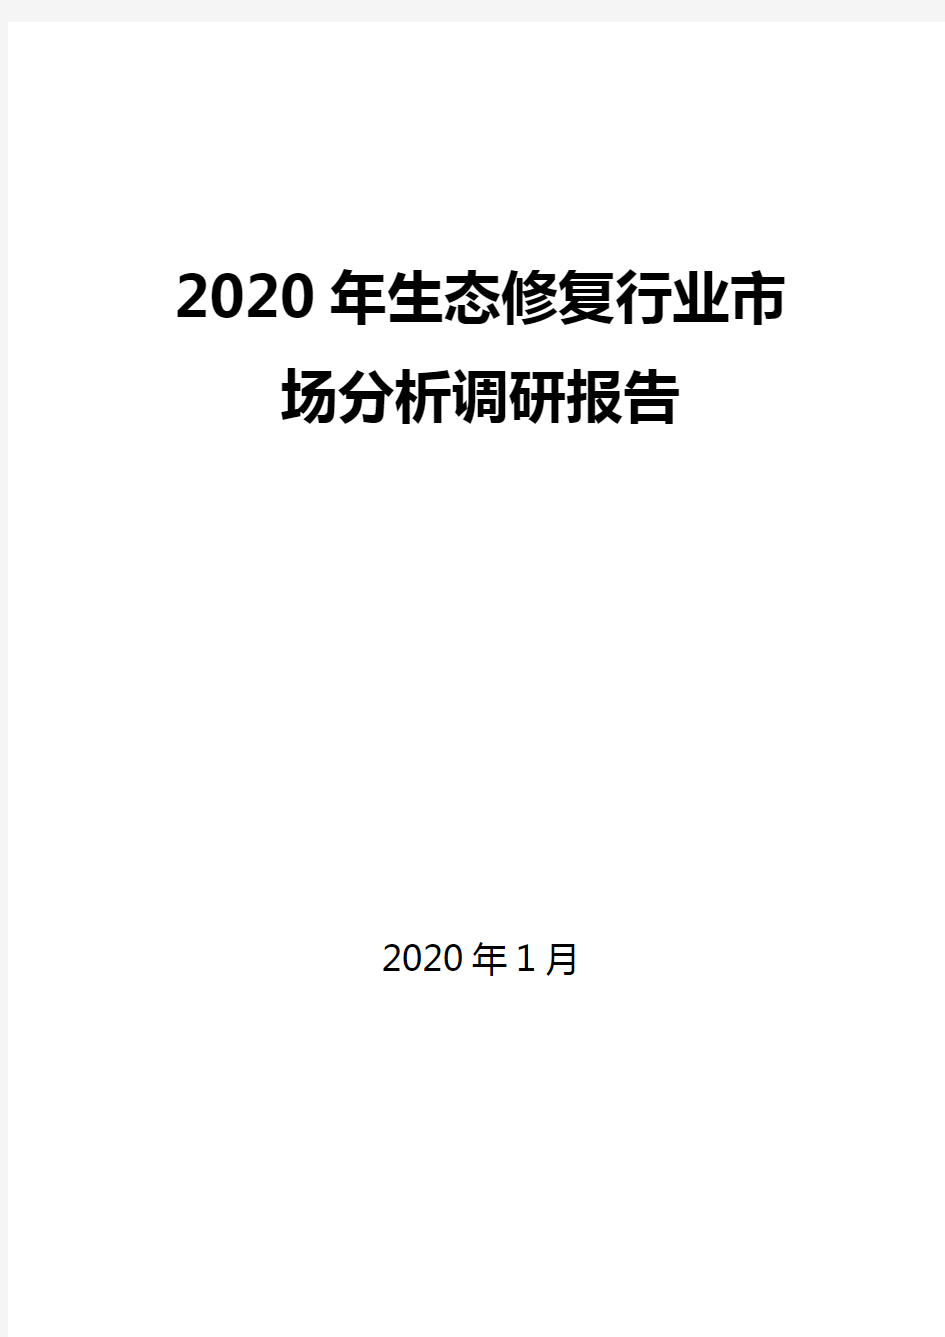 2020年生态修复行业市场分析调研报告